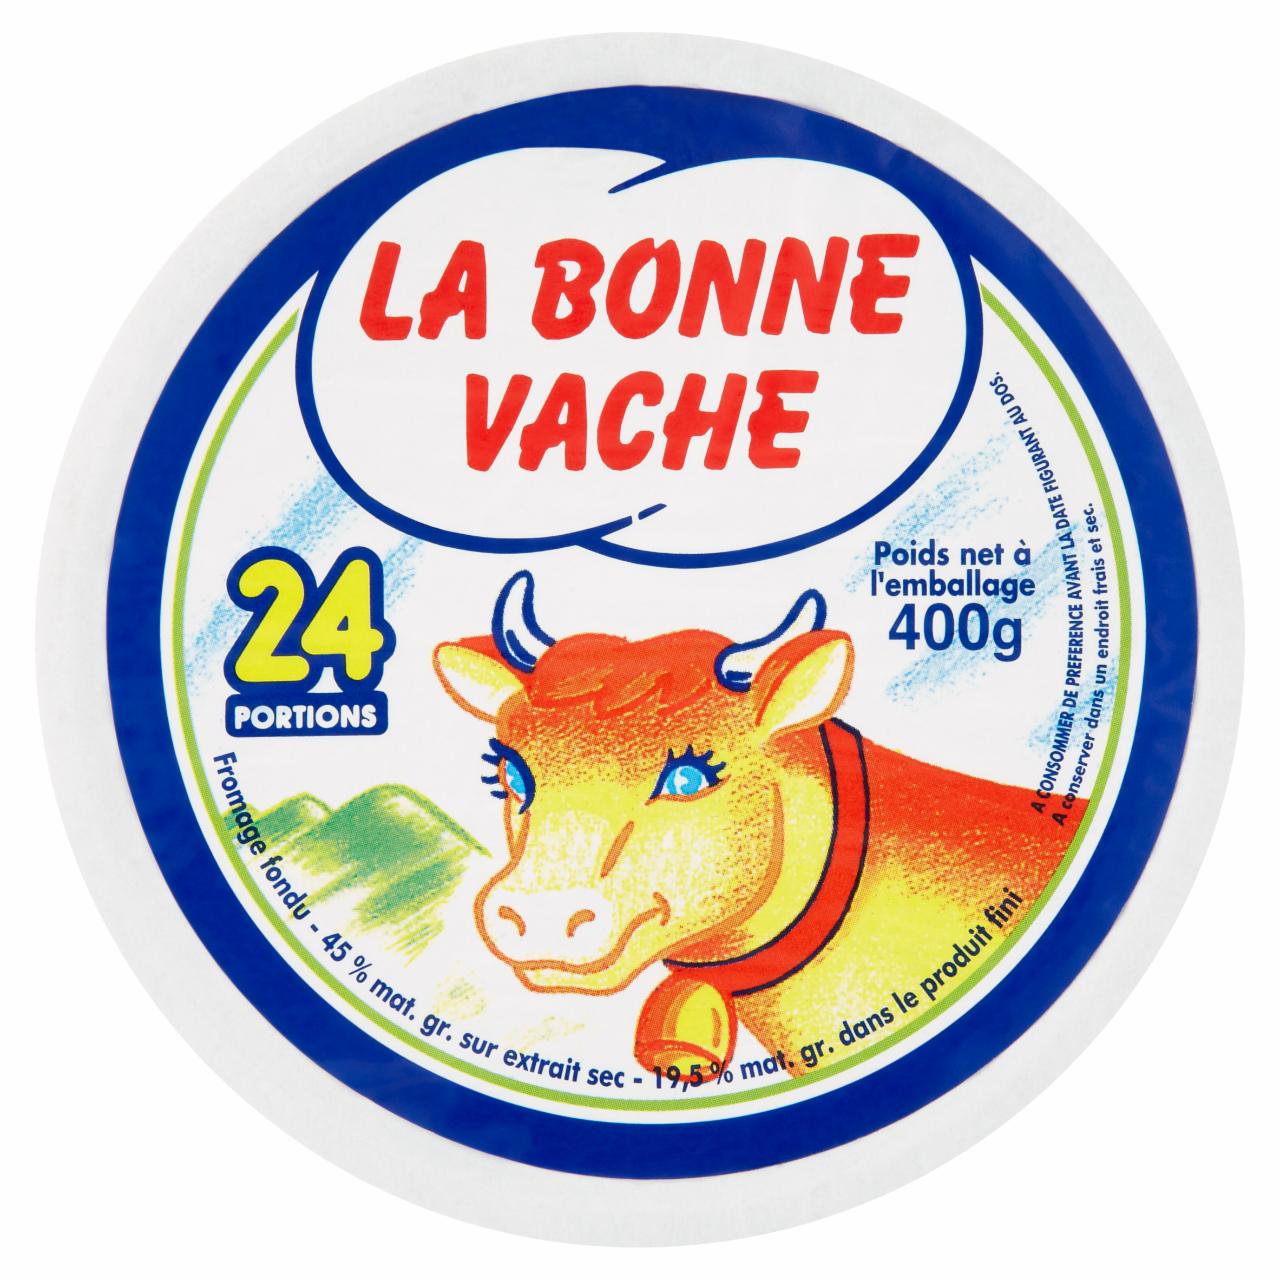 Képek - La Bonne Vache félzsíros ömlesztett sajt 24 adag 400 g